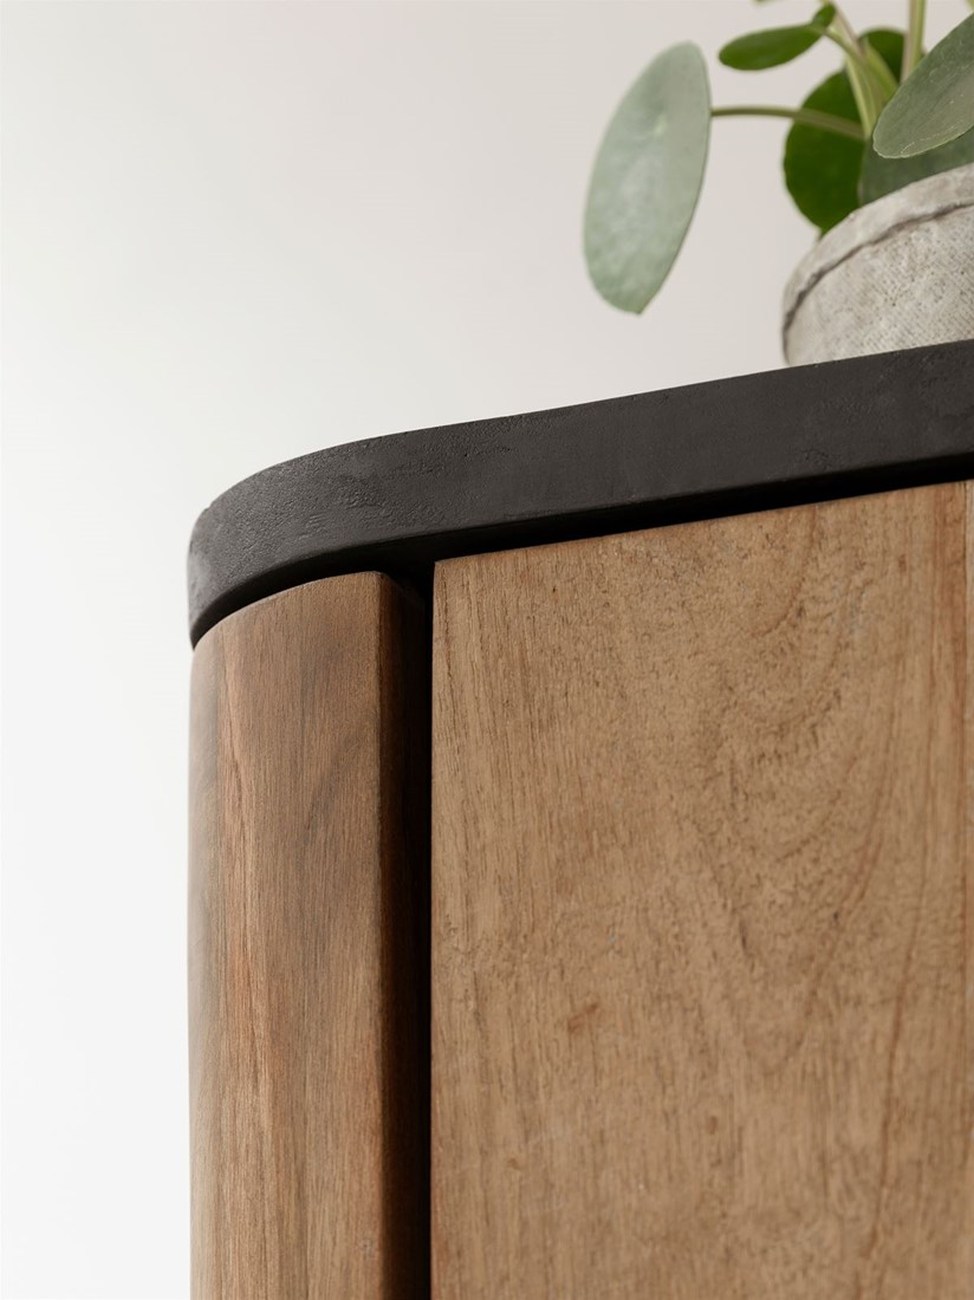 Das Highboard Soho überzeugt mit seinem modernen Design. Gefertigt wurde es aus recyceltem Teakholz, welches einen natürlichen Farbton besitzt. Das Gestell ist aus Metall und hat eine schwarze Farbe. Das Highboard besitzt eine Breite von 90 cm.